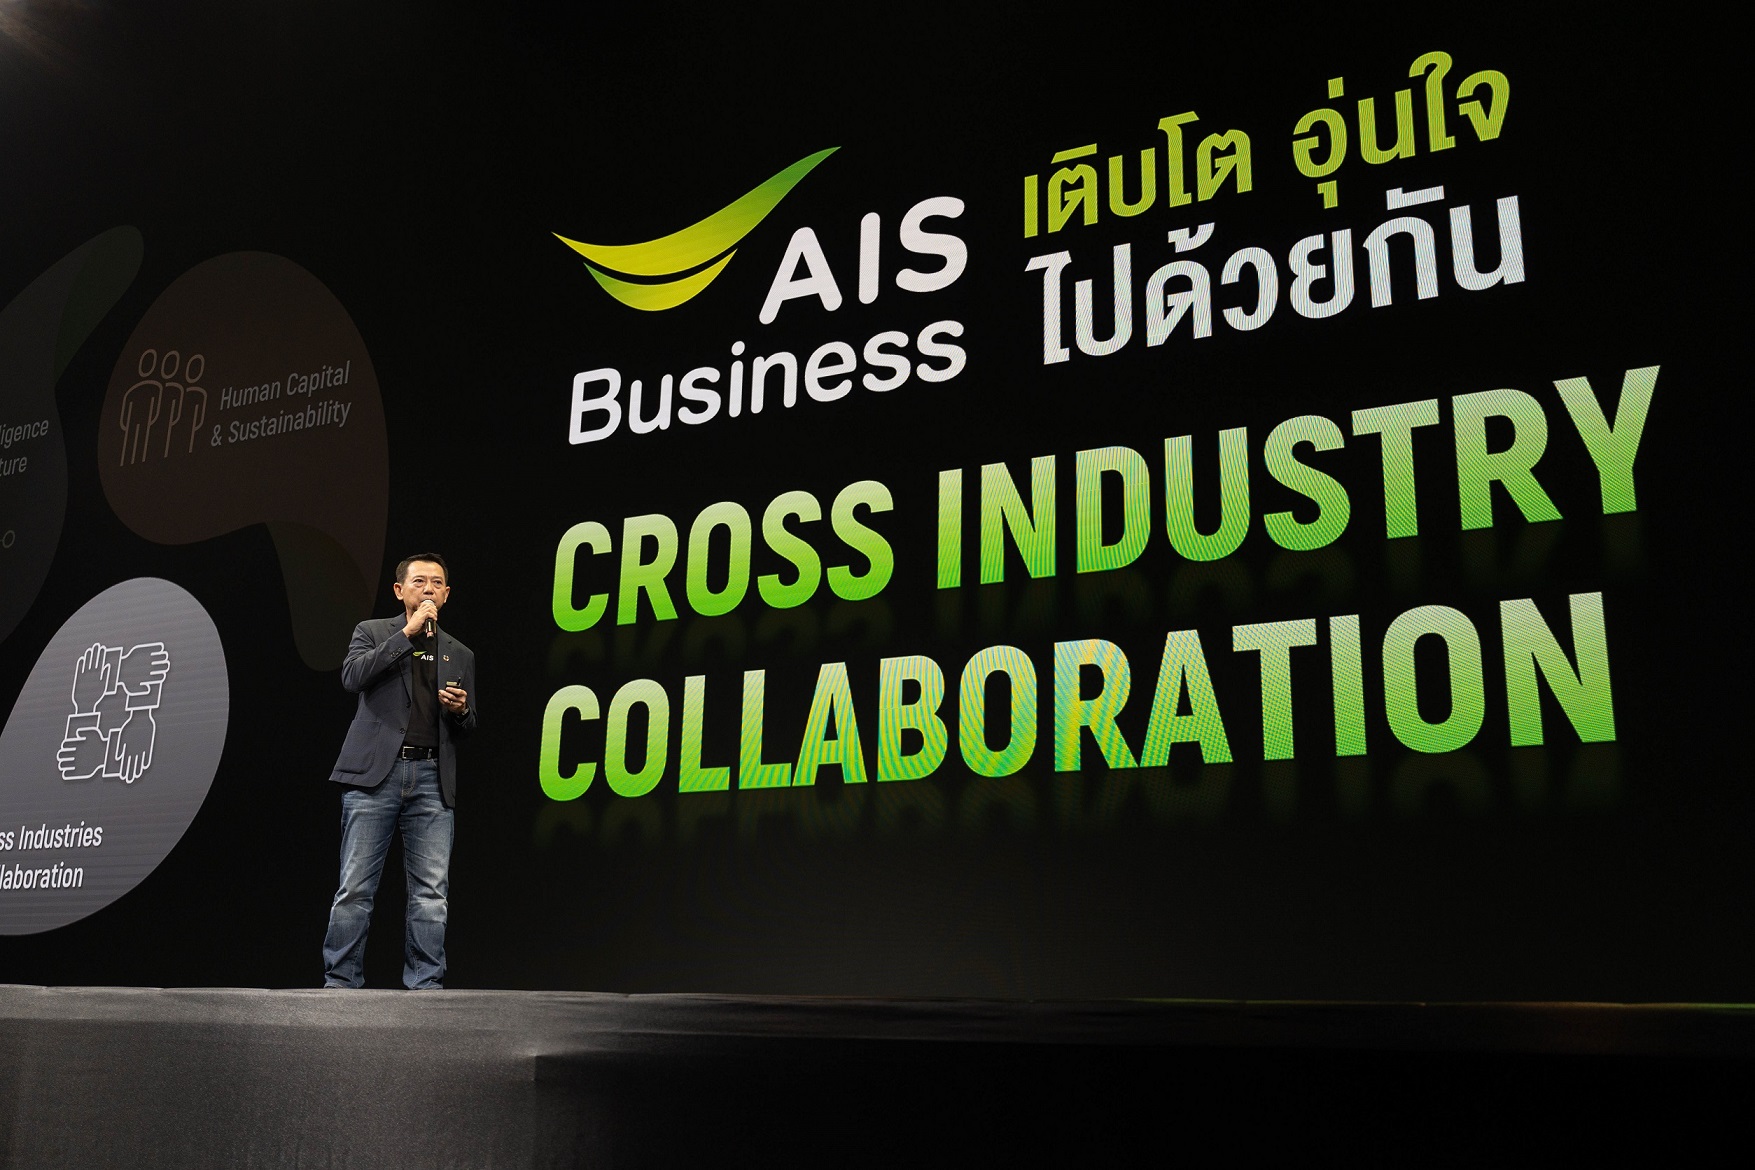 AIS Business ติดปีกอุตสาหกรรมหลัก เสริมขีดความสามารถด้วยโซลูชั่นส์ที่พร้อมใช้งานจริง ตอกย้ำภารกิจ Sustainable Nation สร้างไทยยั่งยืน เติบโต อุ่นใจ ไปด้วยกัน